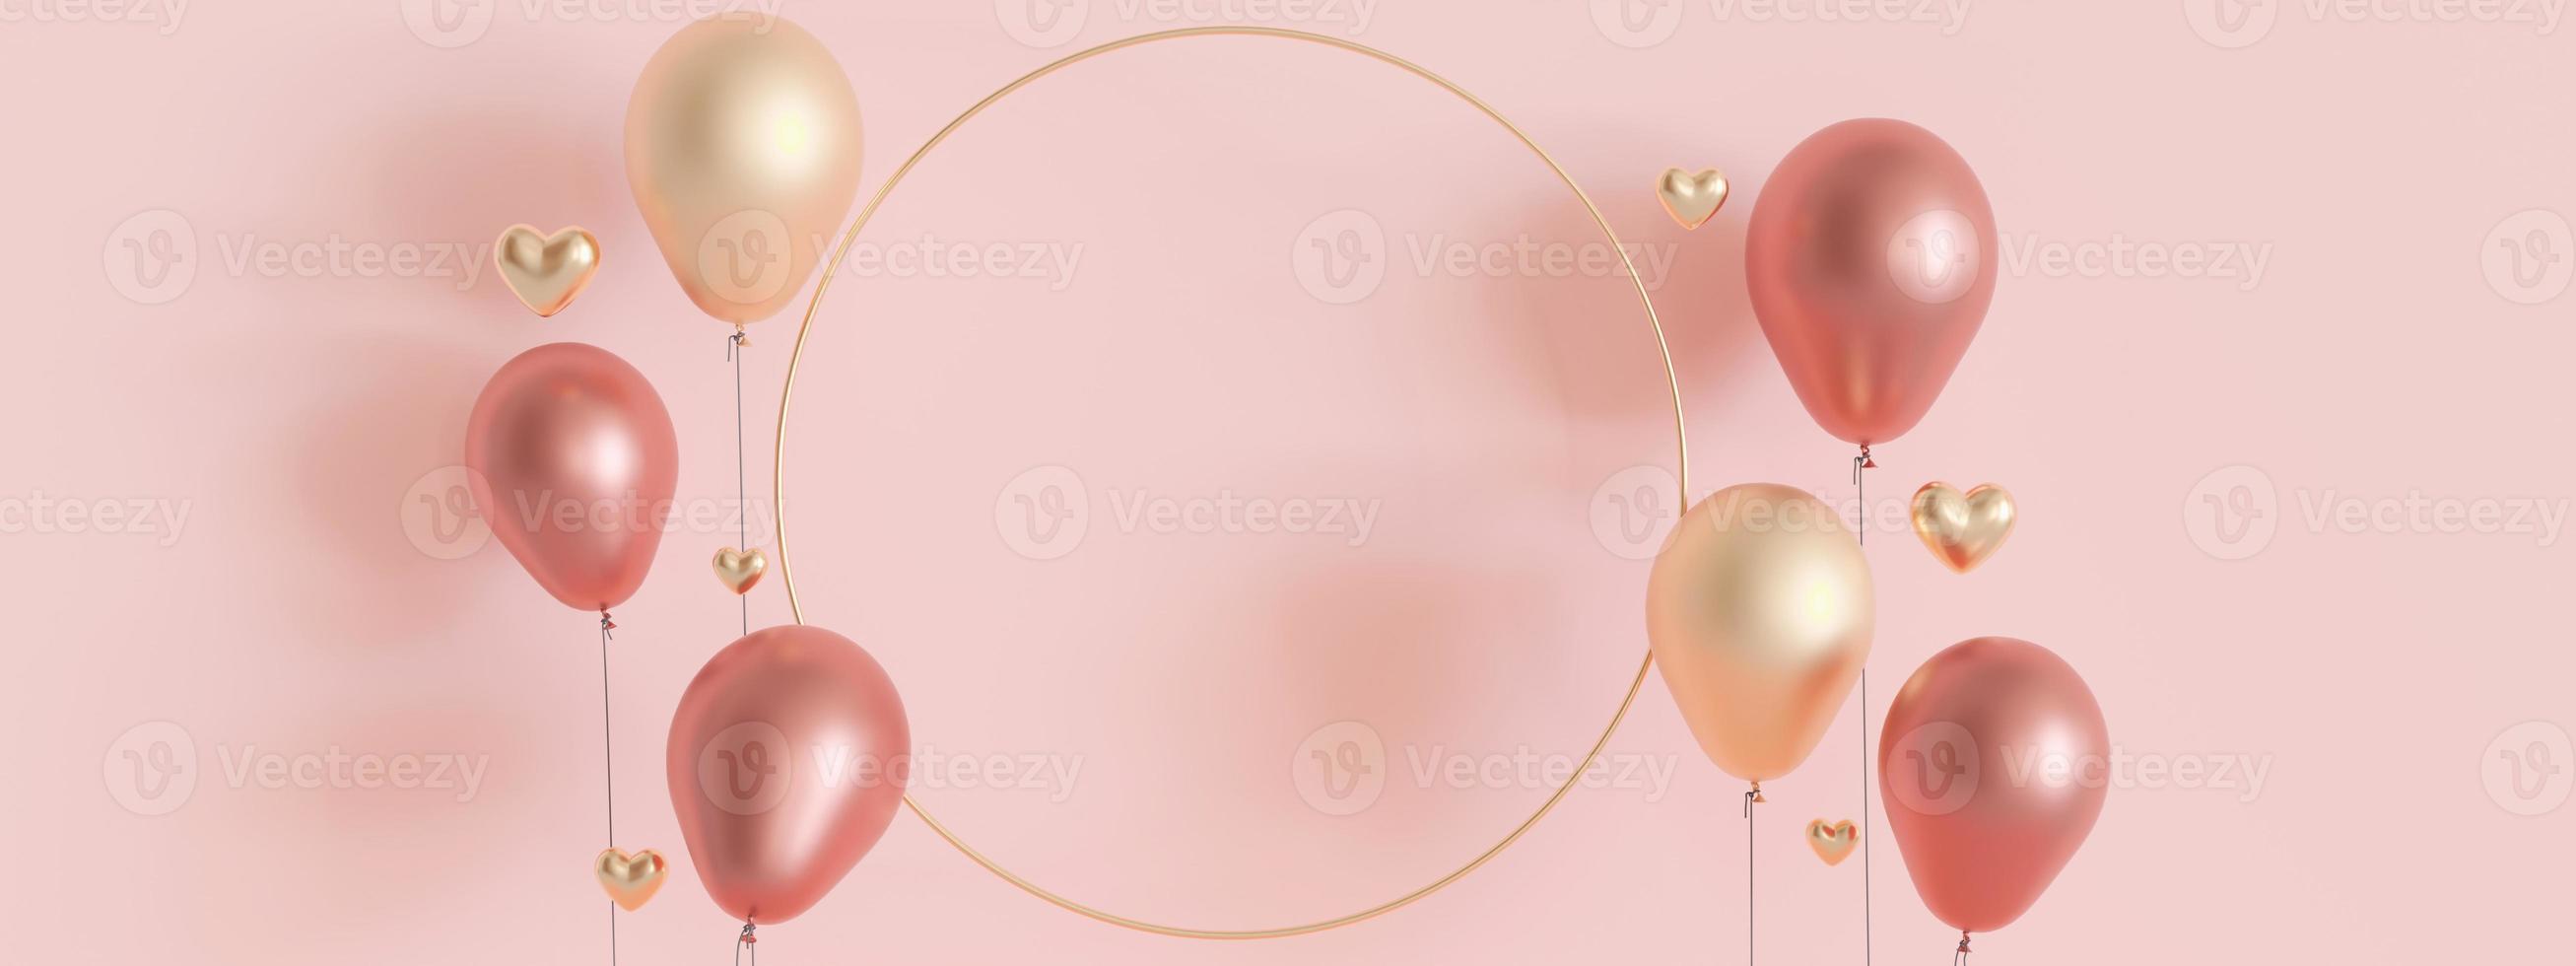 roze achtergrond met gouden harten, ballonnen en kopiëren ruimte. Valentijnsdag dag, moeder dag, bruiloft achtergrond. leeg ruimte voor reclame tekst, uitnodiging, logo. spandoek. 3d veroorzaken. foto